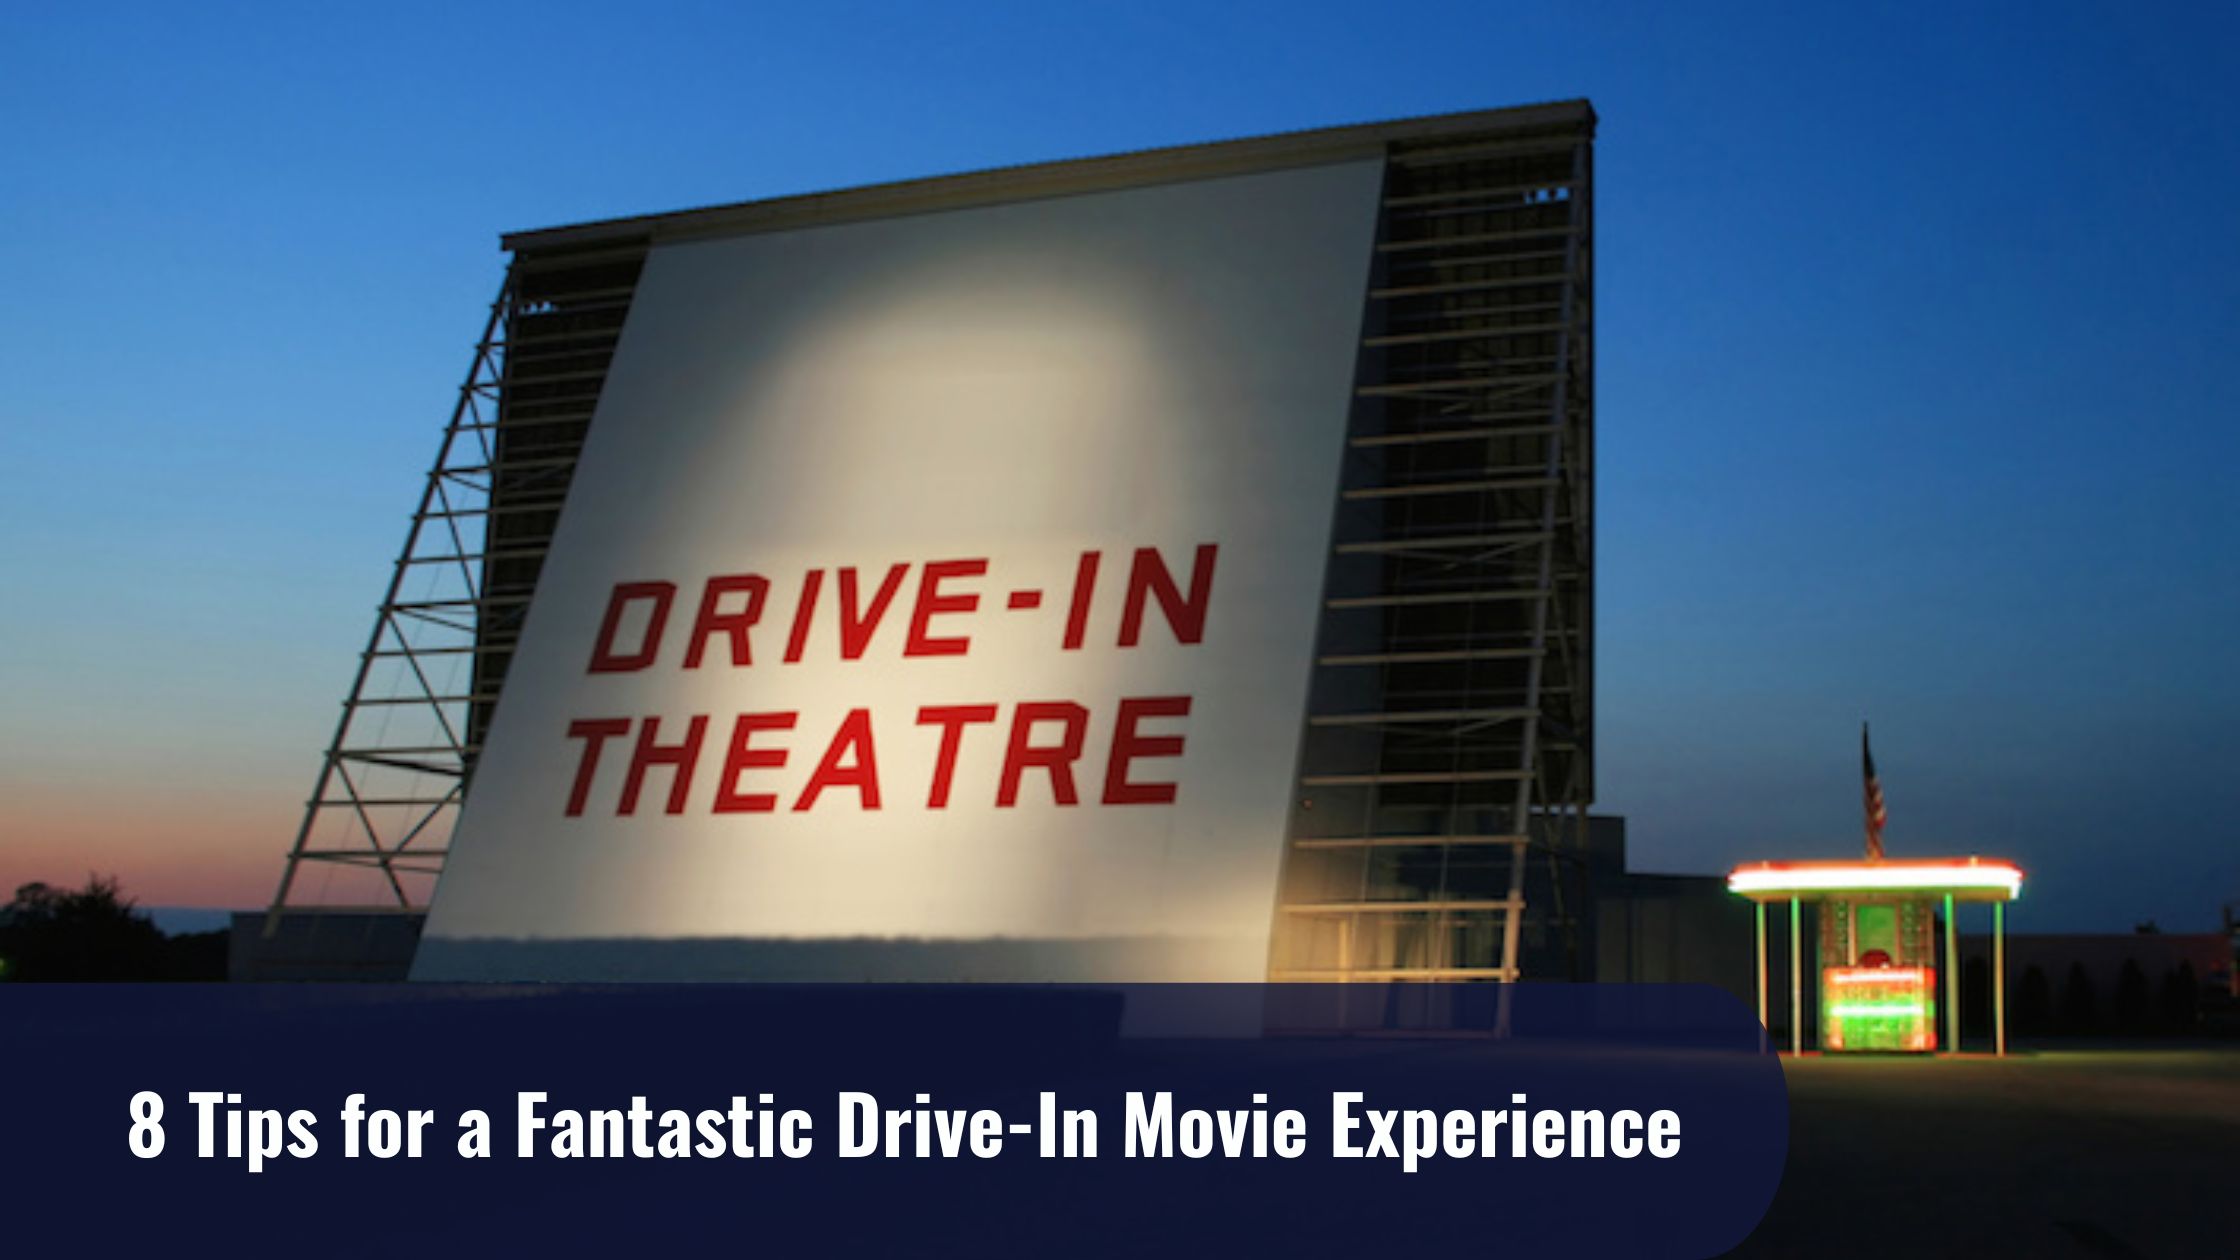 Drive-in movie theatre